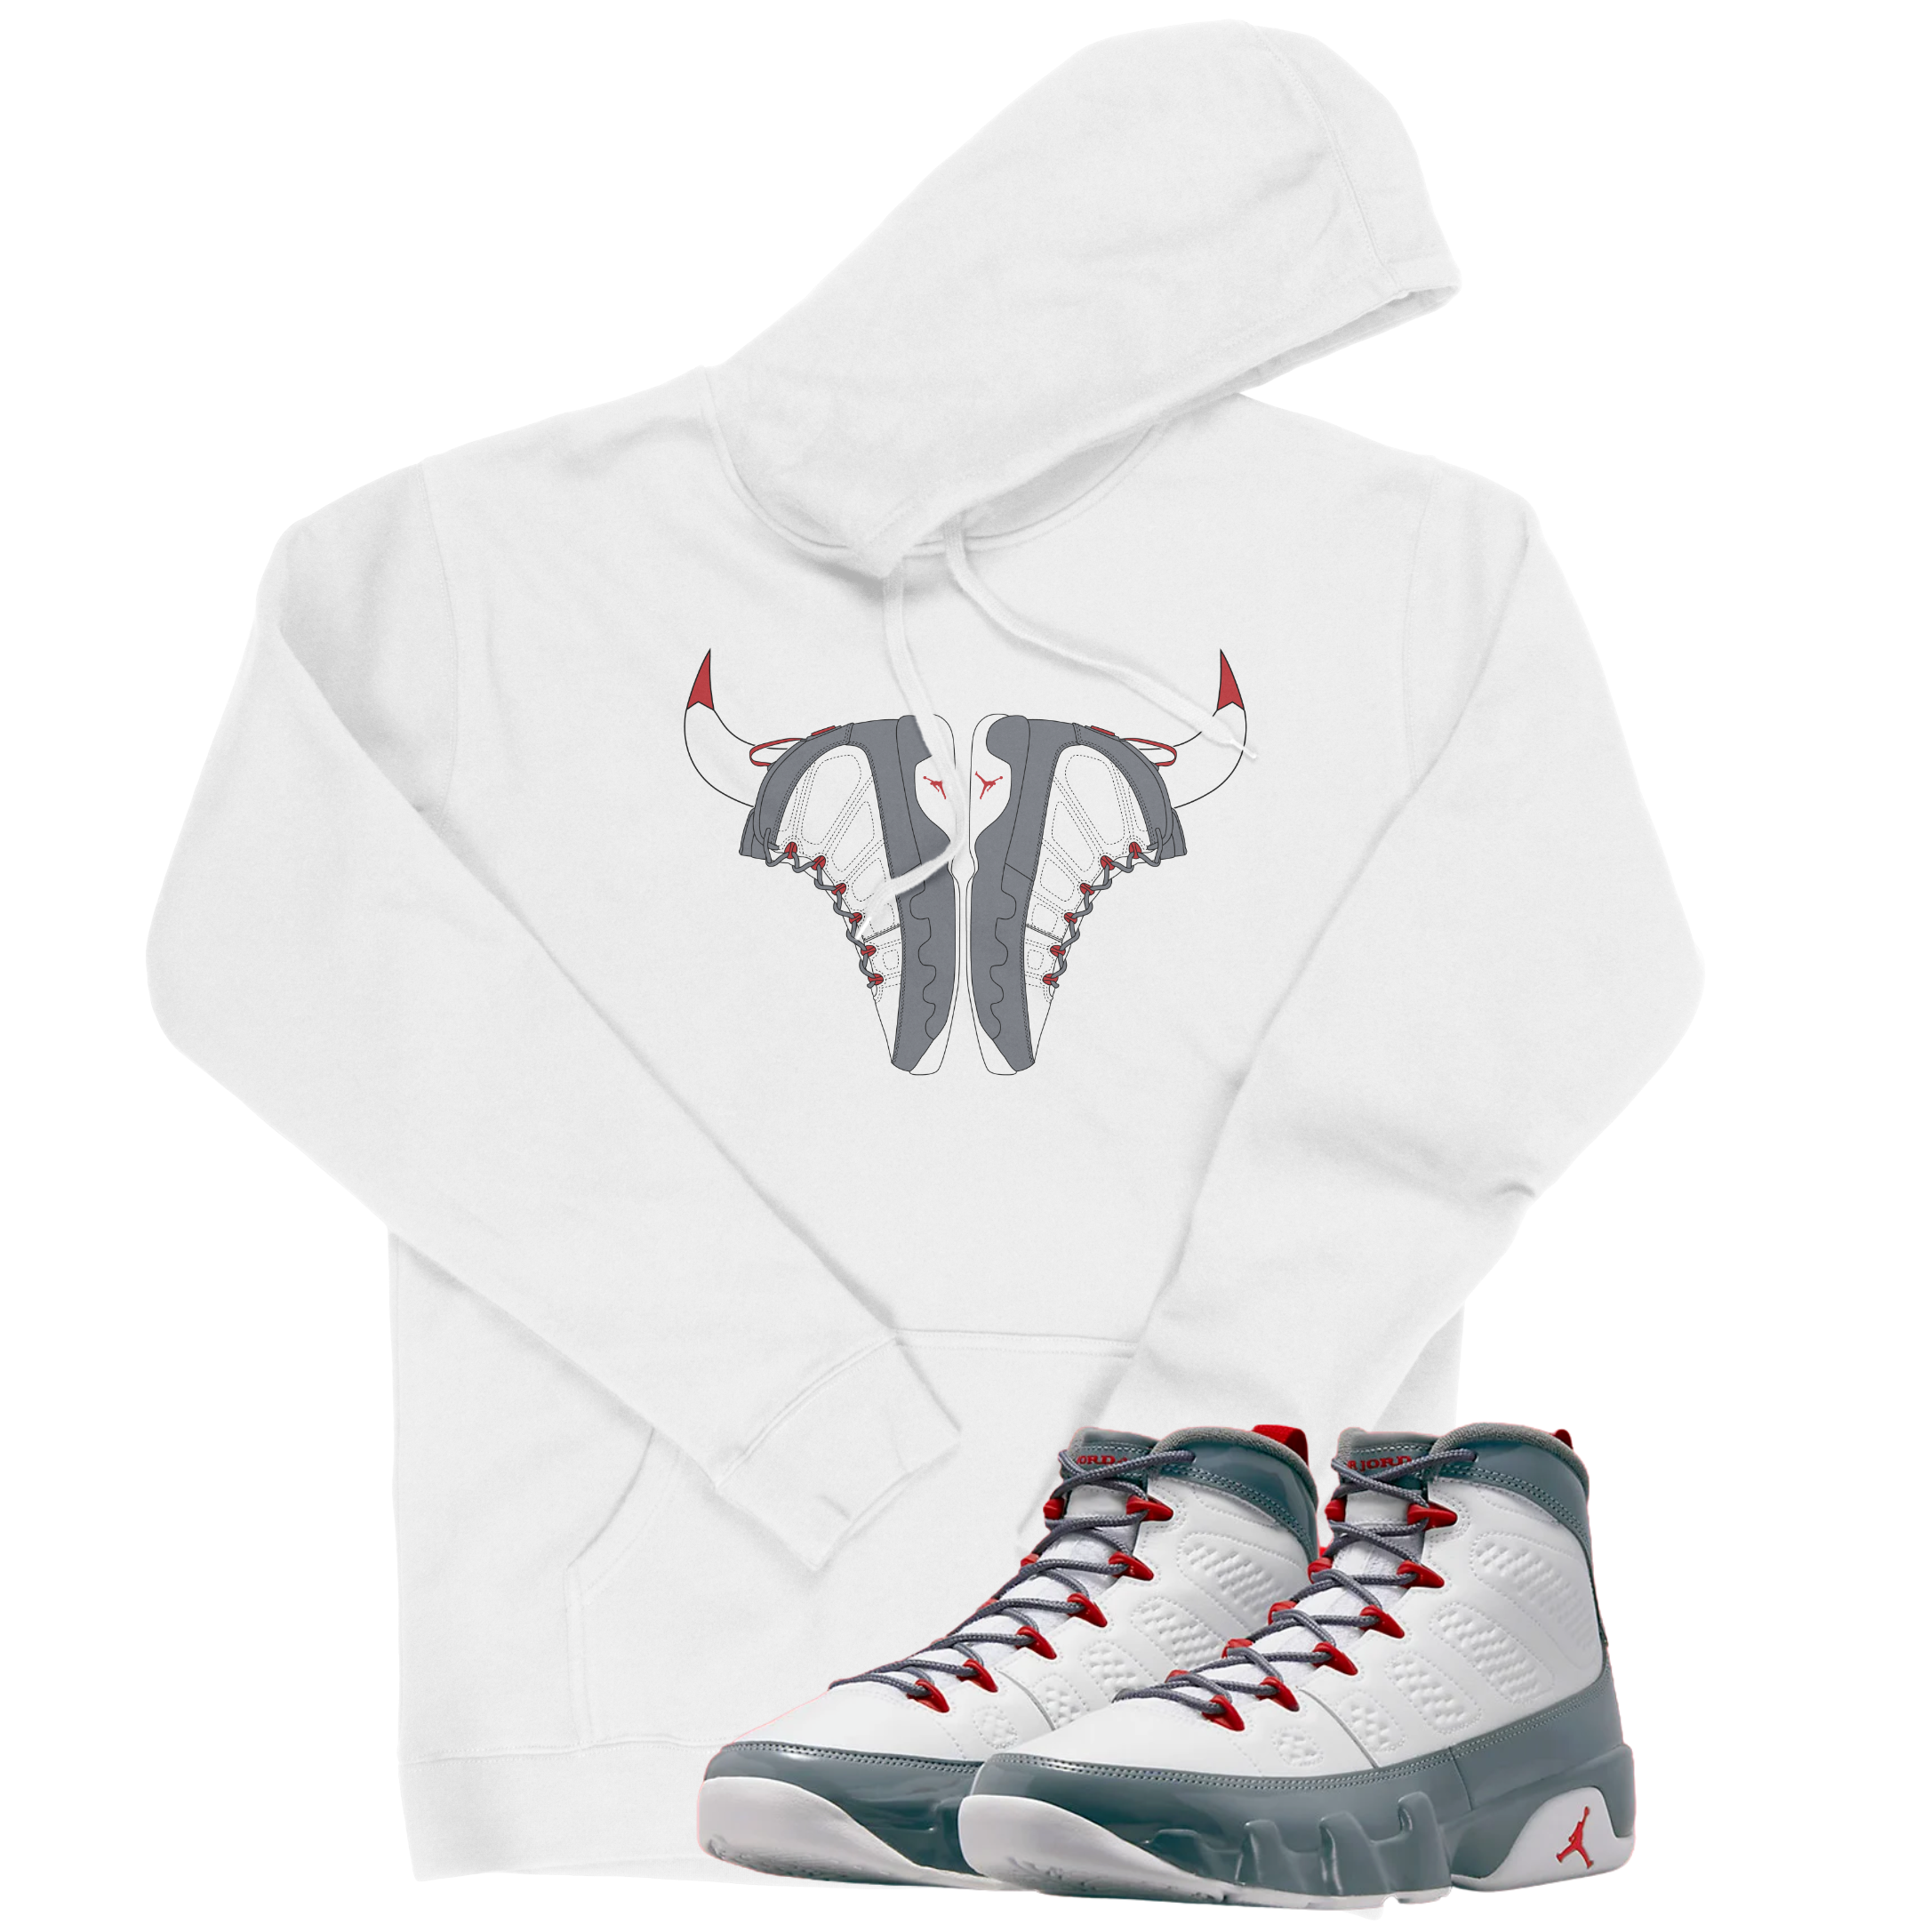 Air Jordan 9 Fire Red I Bull Hoodie | Air Jordan 9 Fire Red | Sneaker Match | Jordan Matching Outfits